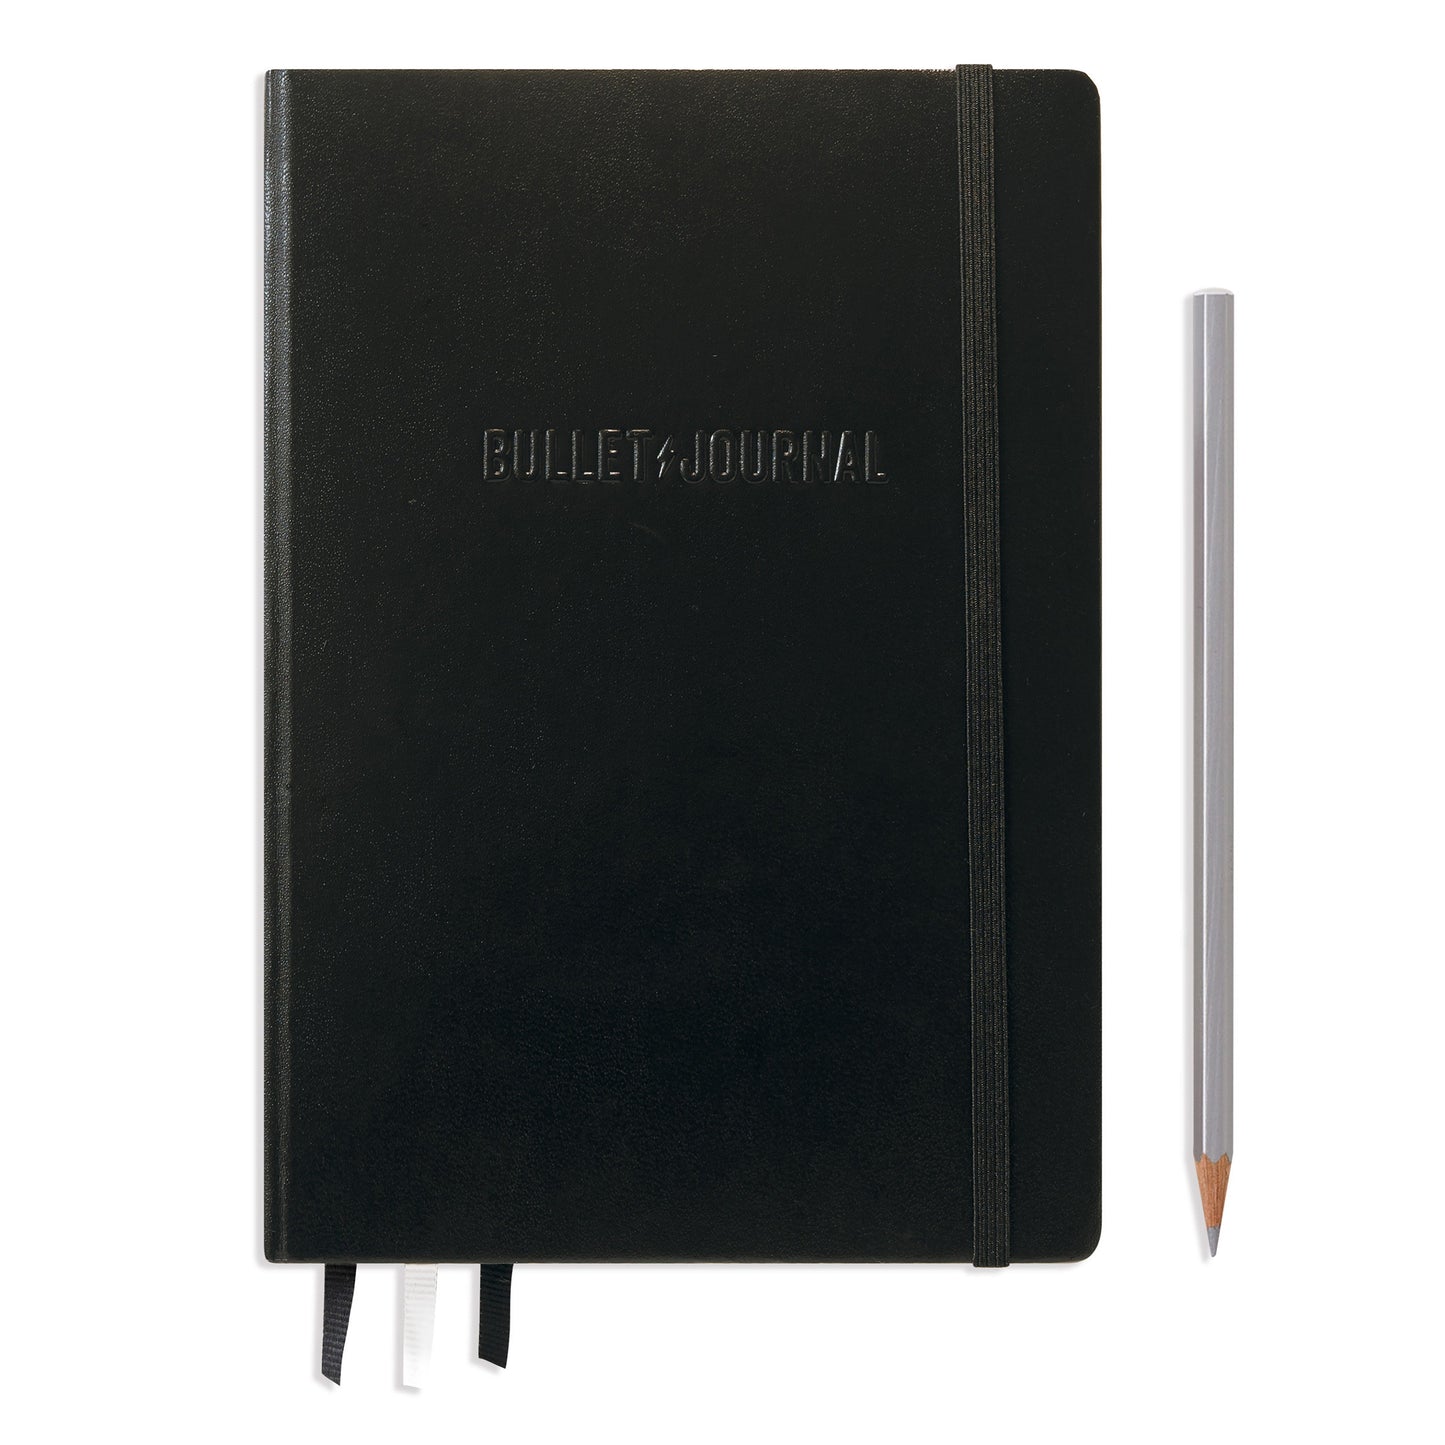 Leuchtturm1917 Bullet Journal A5 Black (Edition 2)